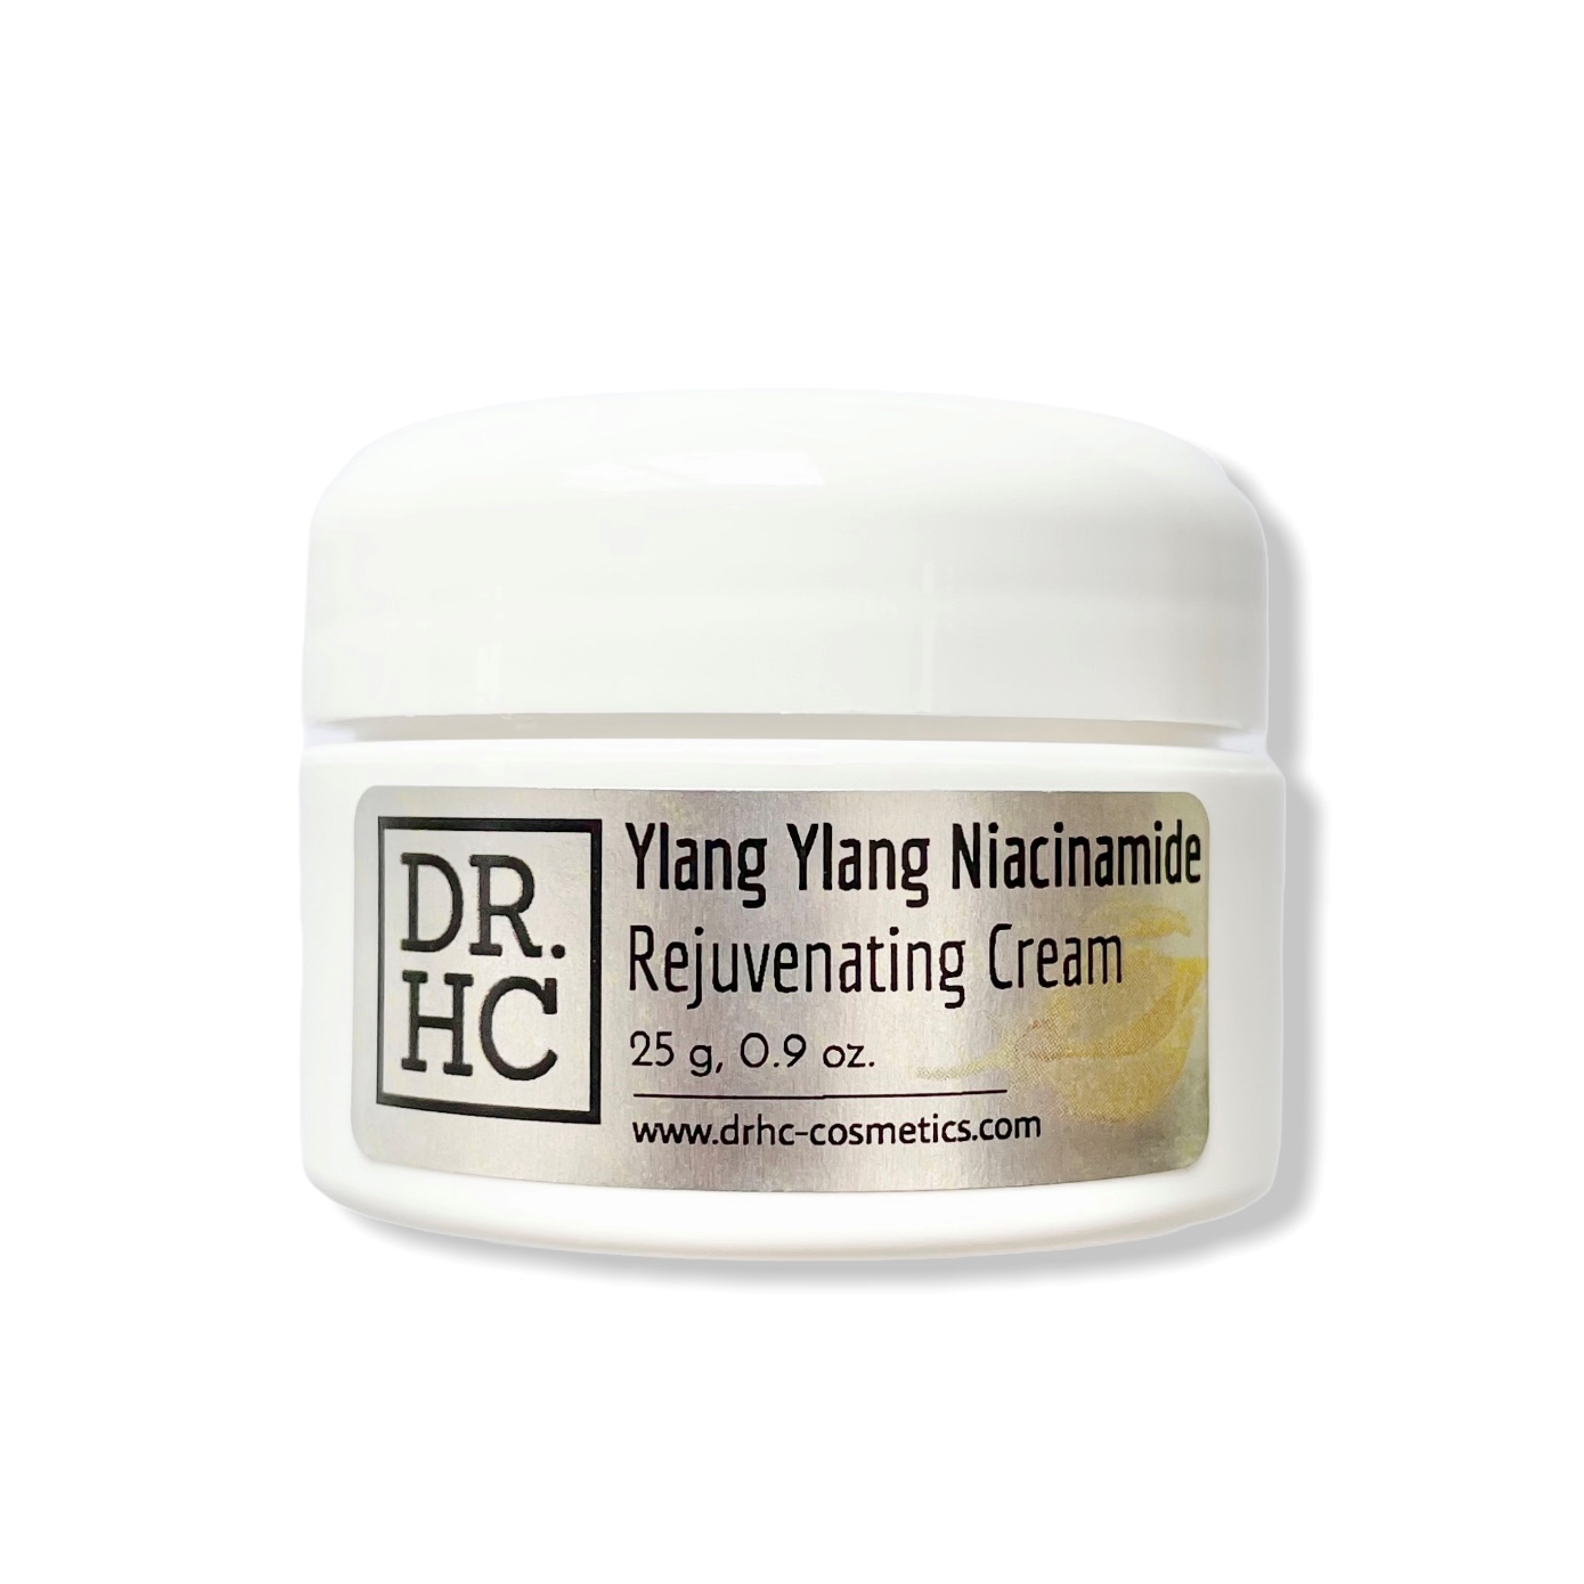 DR.HC Ylang Ylang Niacinamide Rejuvenating Cream (25~40g, 0.9~1.4oz.) (Skin recovery, Anti-scar, Firming, Anti-inflammatory...)-5